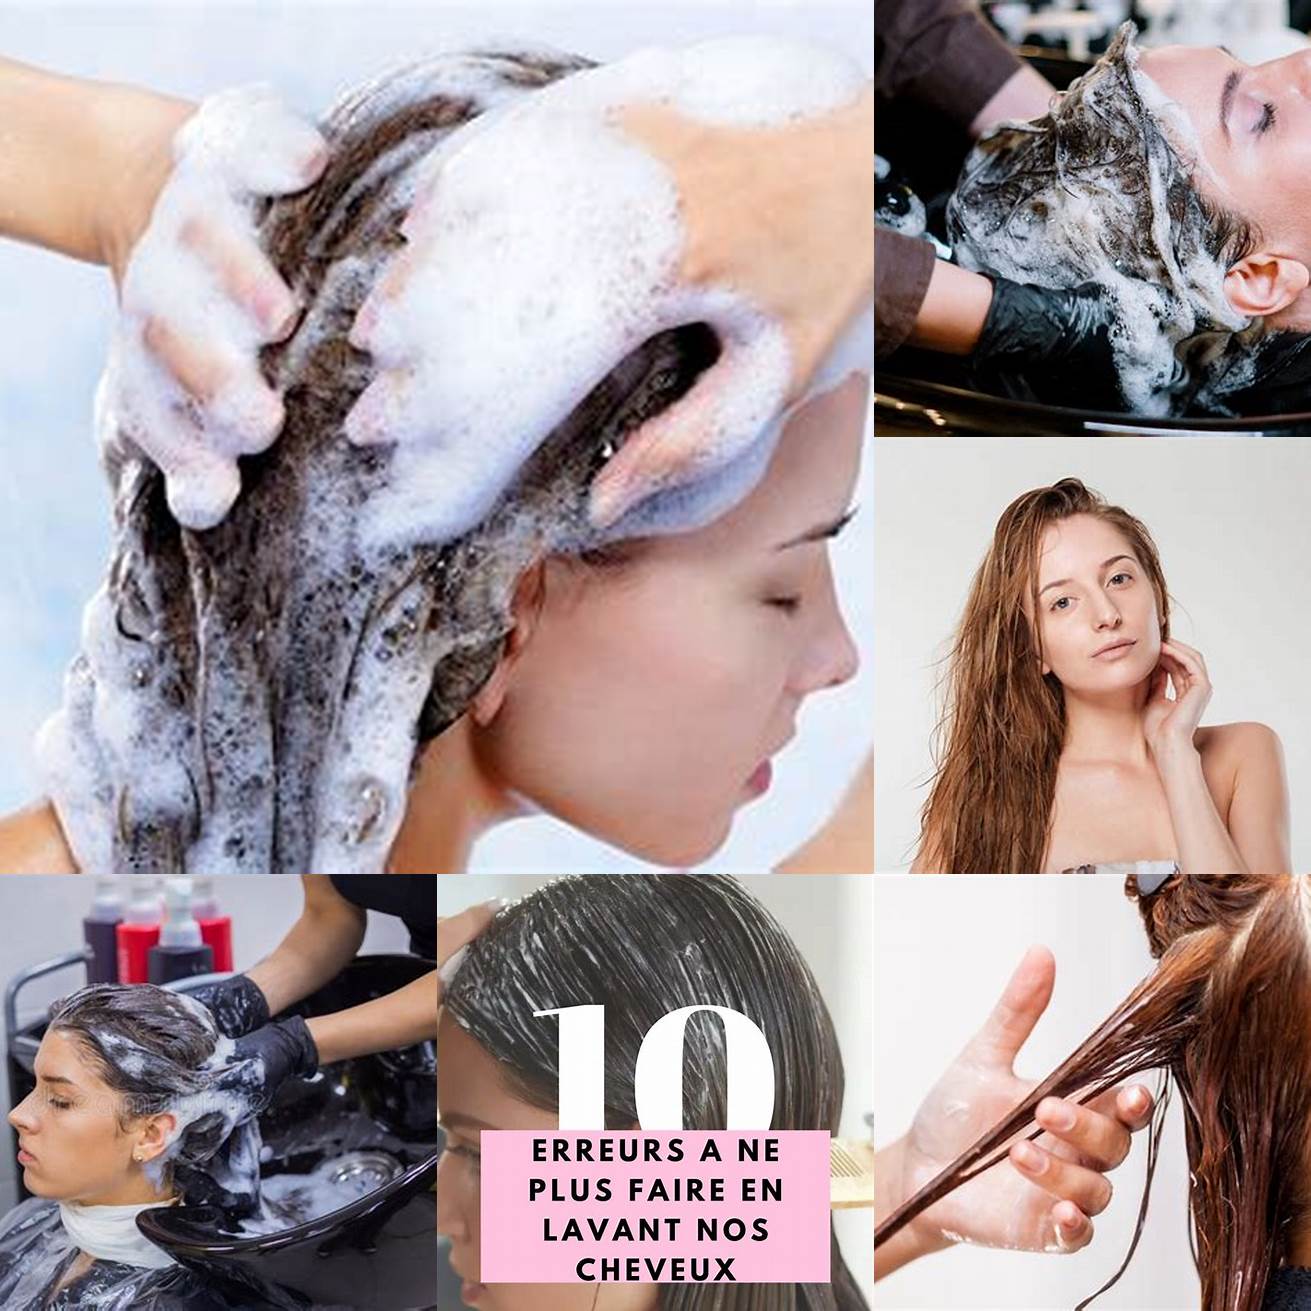 Laver les cheveux et appliquer un produit coiffant